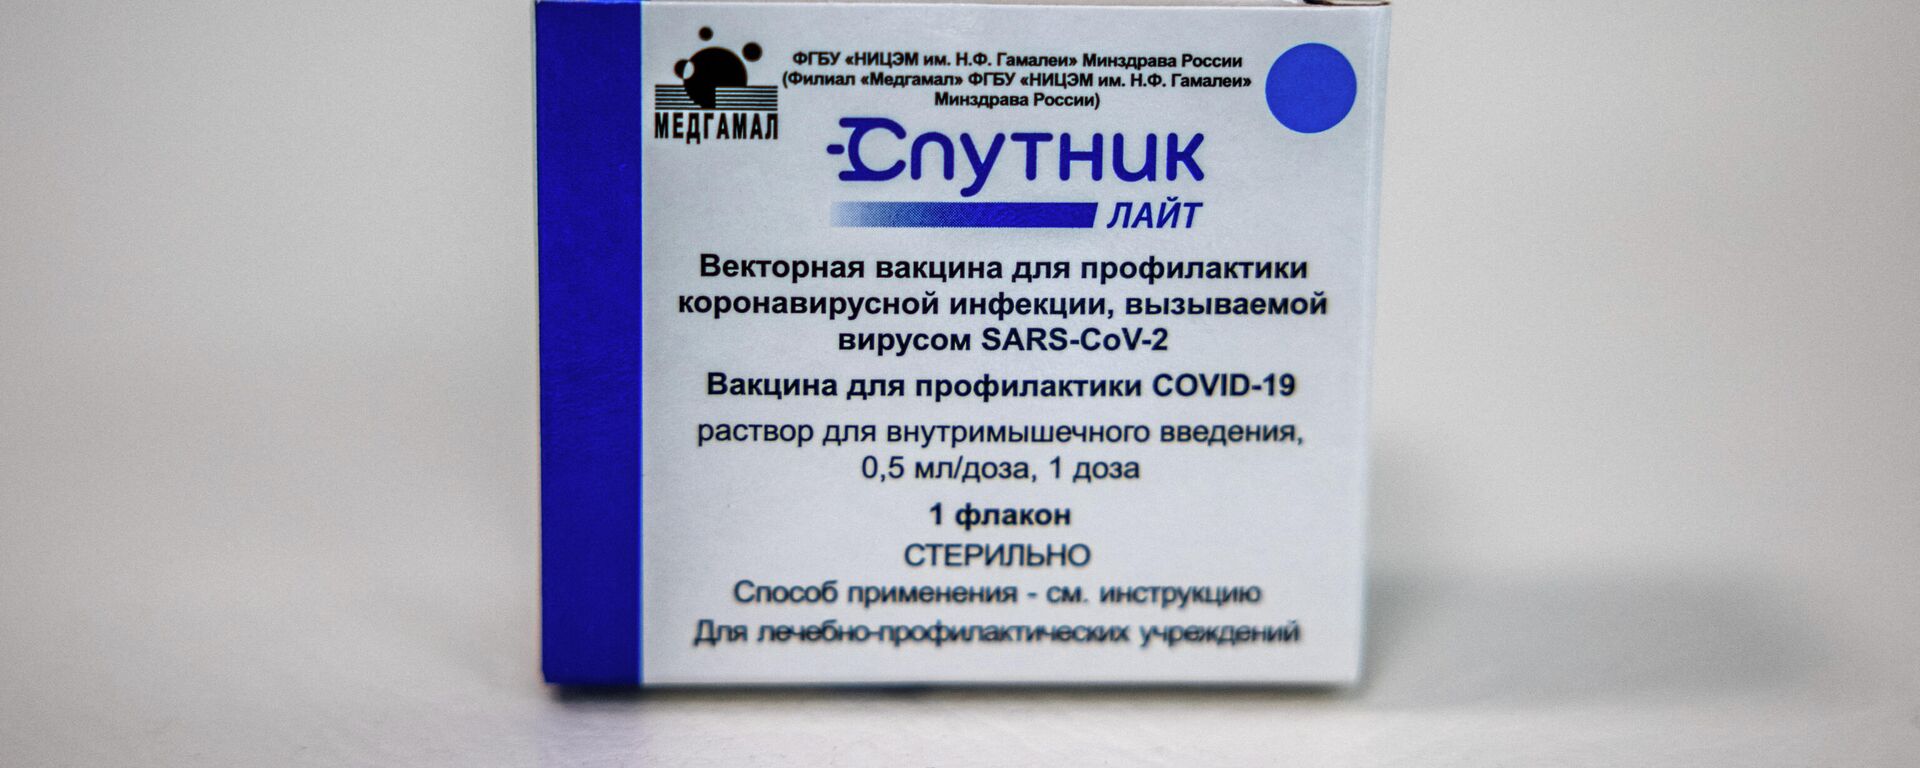 Caixa com frascos da Sputnik Light, vacina de dose única contra a COVID-19, em centro de vacinação do Parque Sokolniki, Moscou, Rússia, 2 de julho de 2021 - Sputnik Brasil, 1920, 06.02.2022